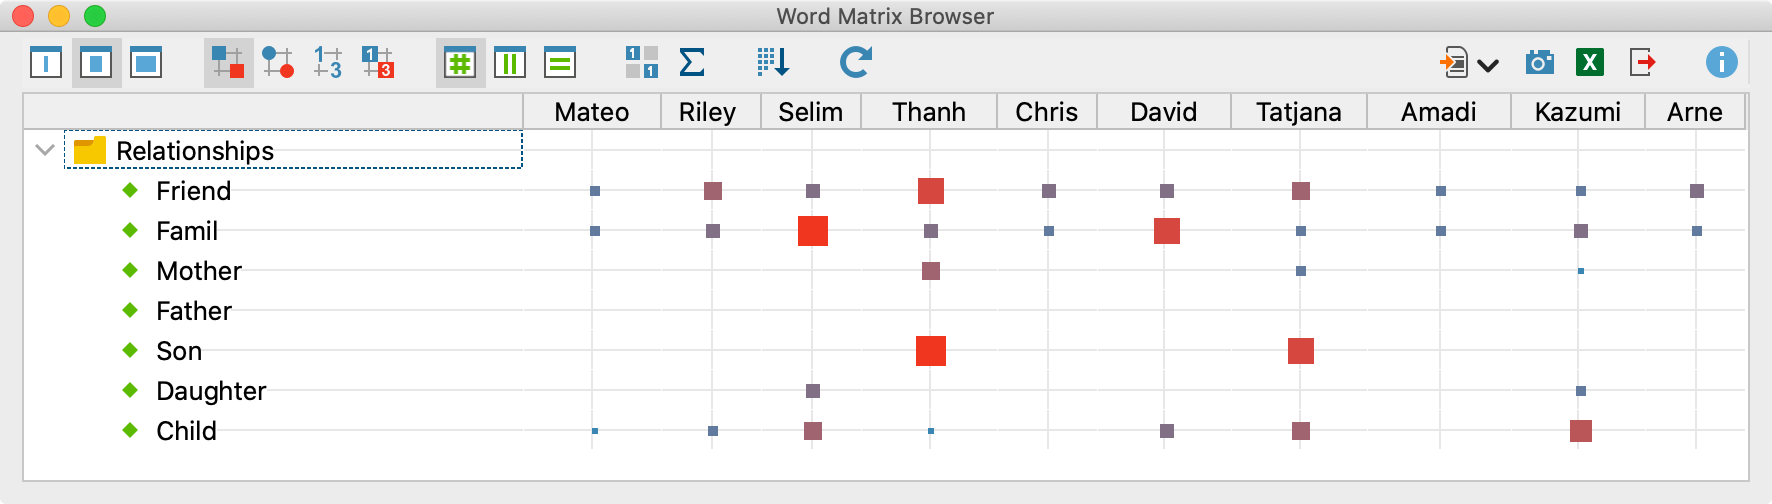 Der Wort-Matrix-Browser